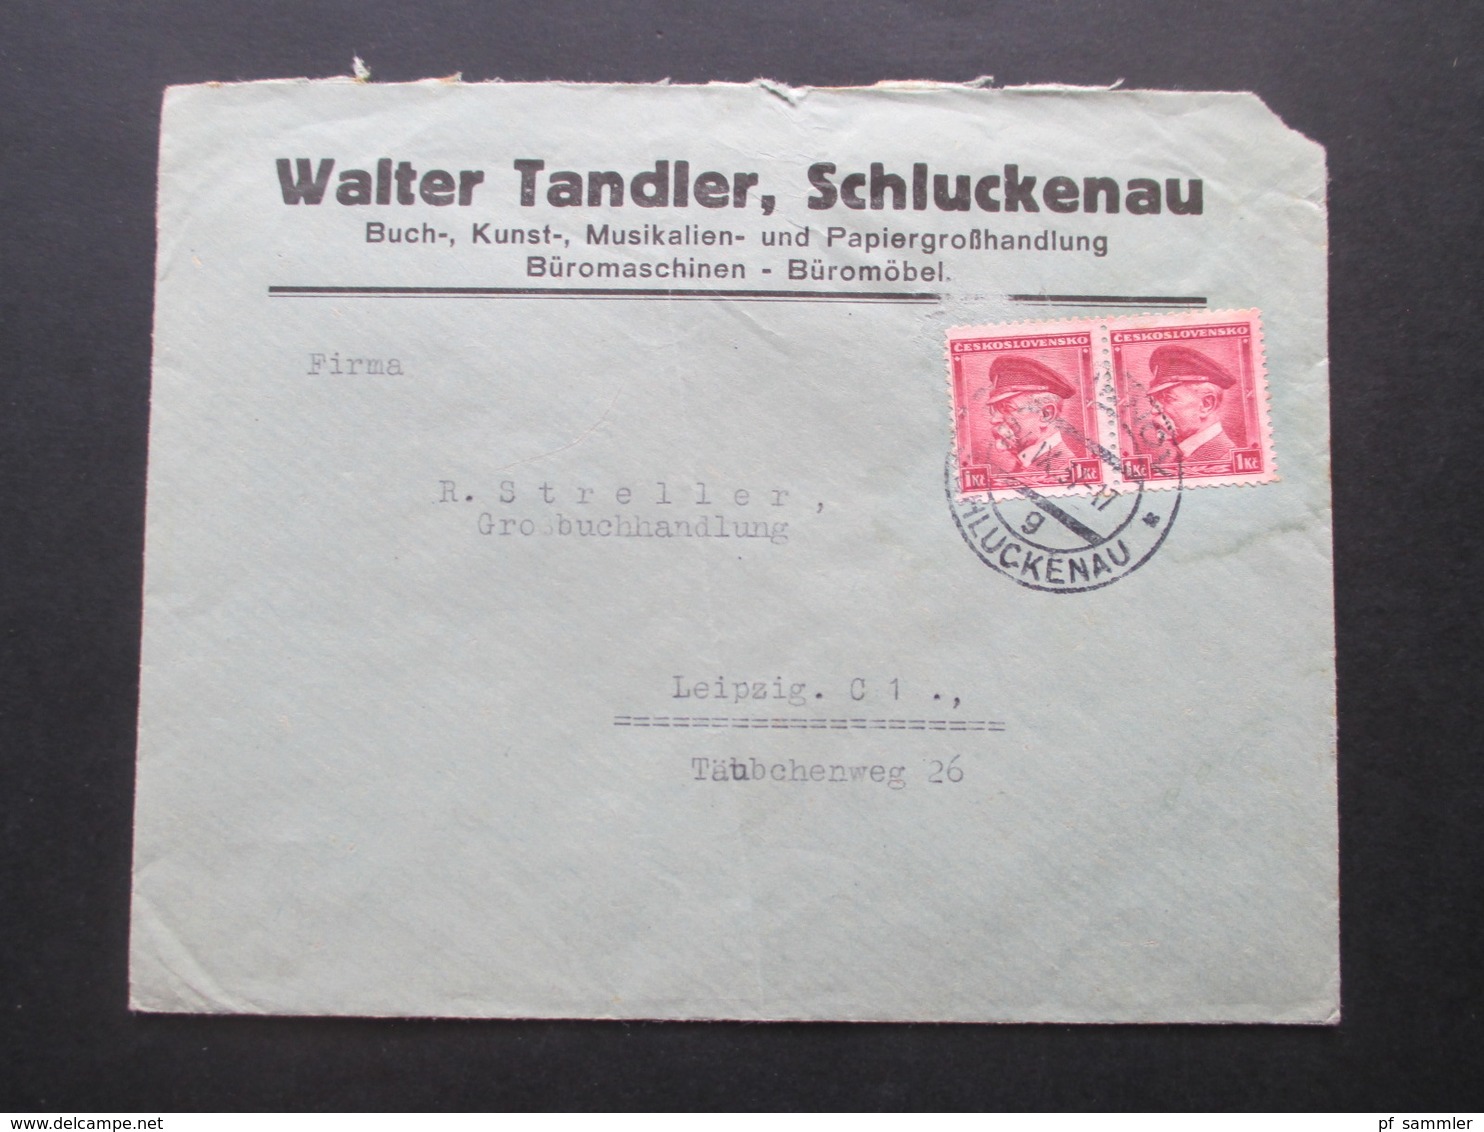 CSSR 1929-46 Belegeposten 65 Stk. Zweisprachige Stempel / Sudetenland Gebiete Firmenumschläge / Korrespondenz Bedarf